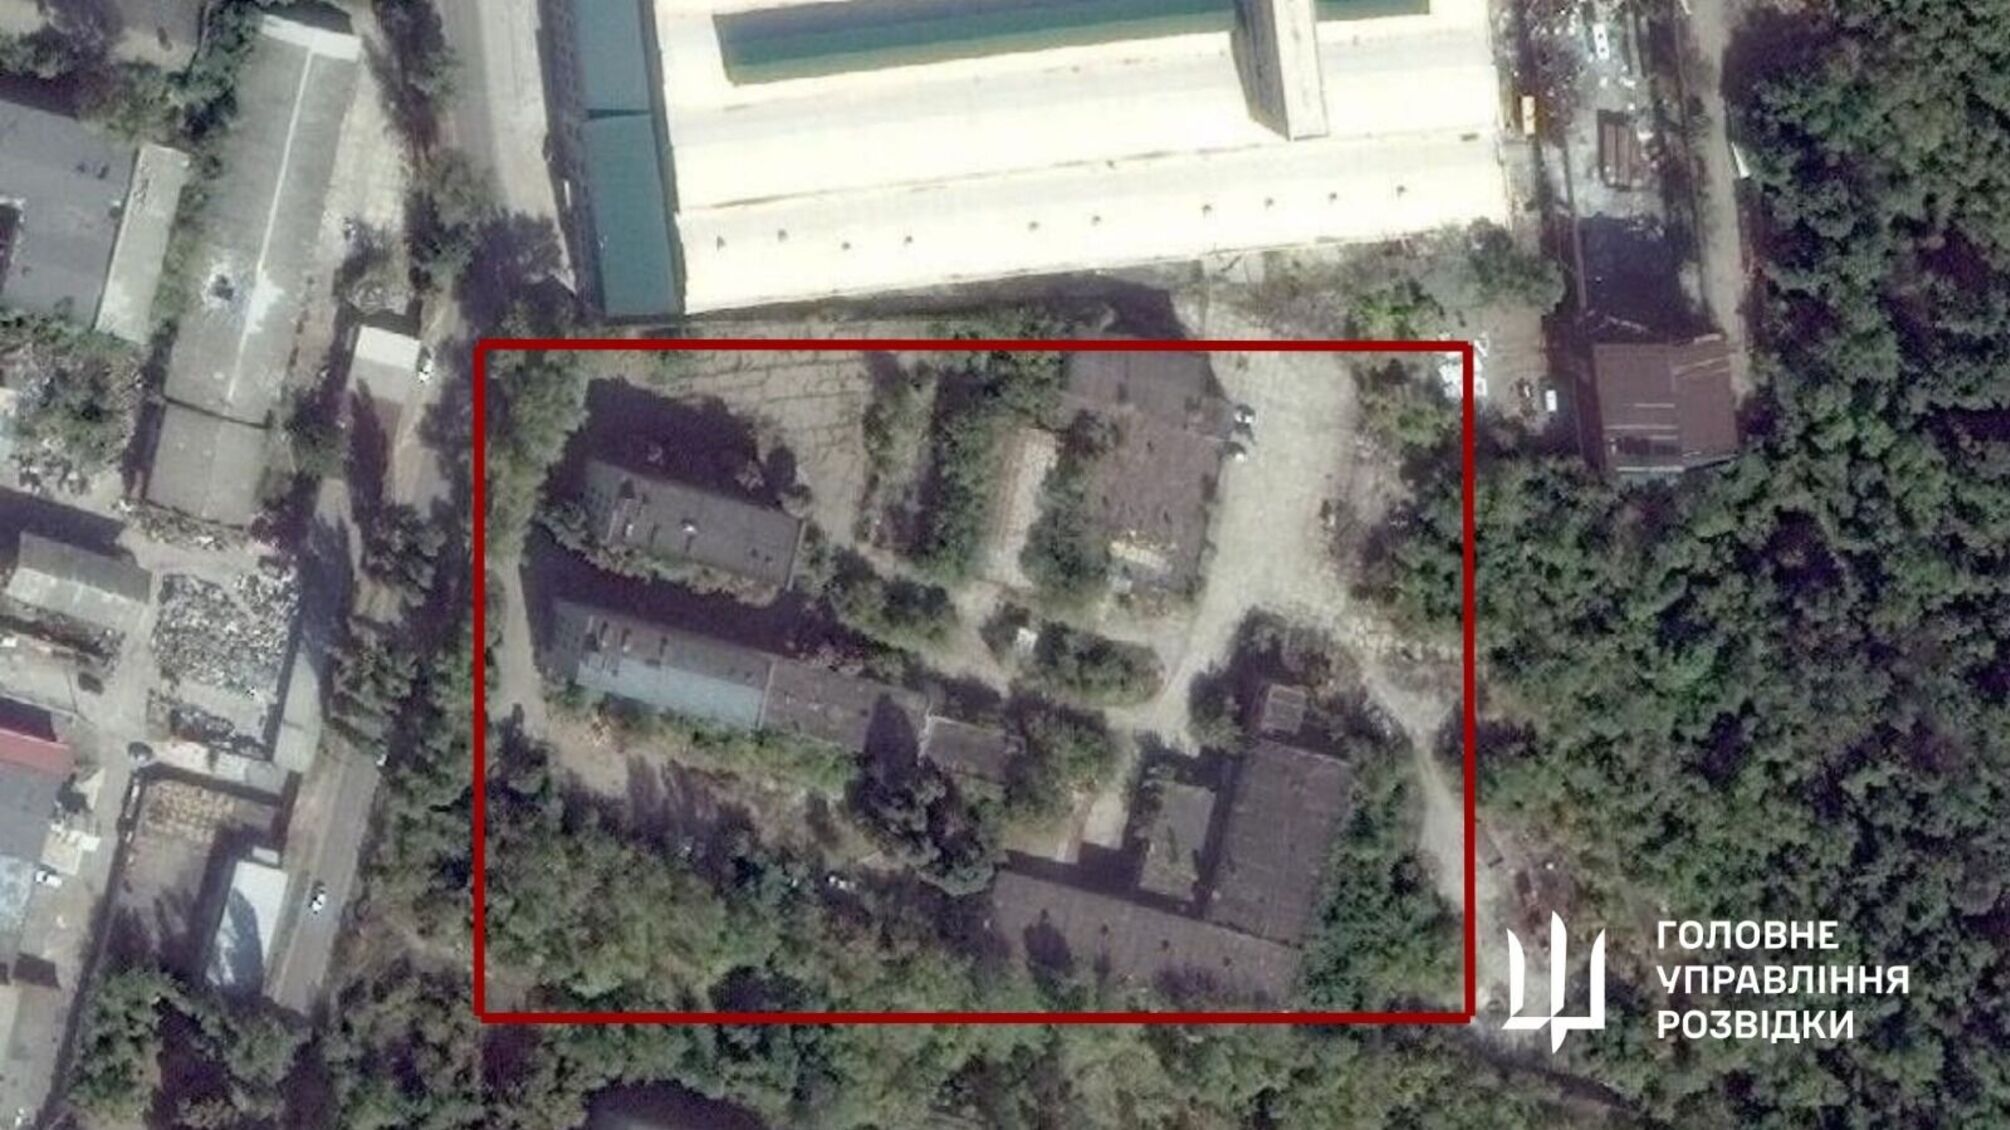 Бійці ГУР МО підірвали склад з боєкомплектом ворога в окупованому Донецьку